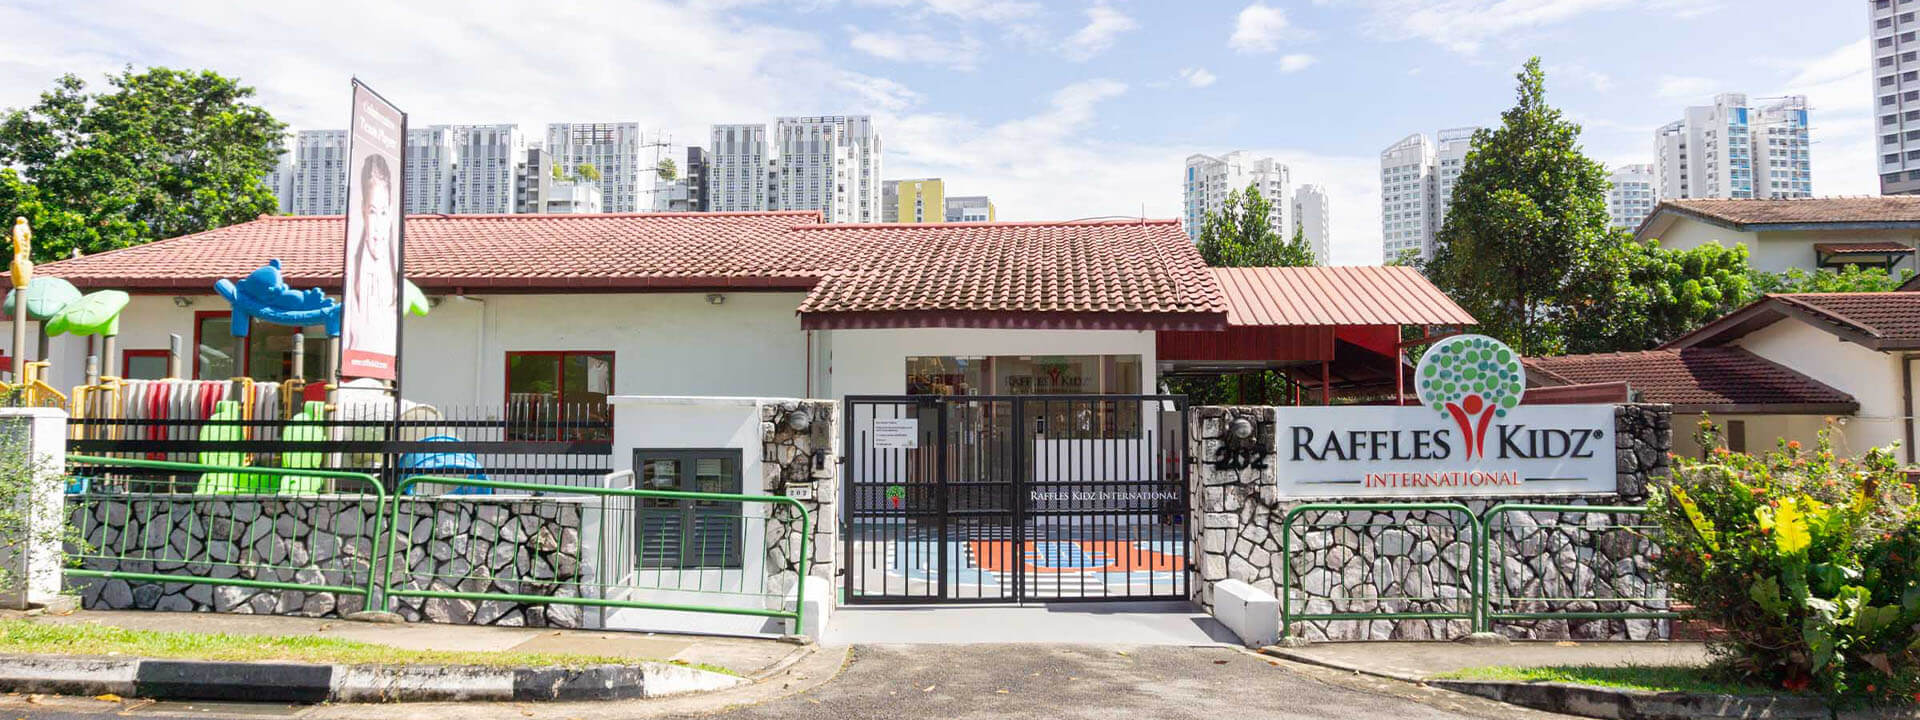 Raffles Kidz @ Punggol | Best Childcare Centre Singapore | Entrance